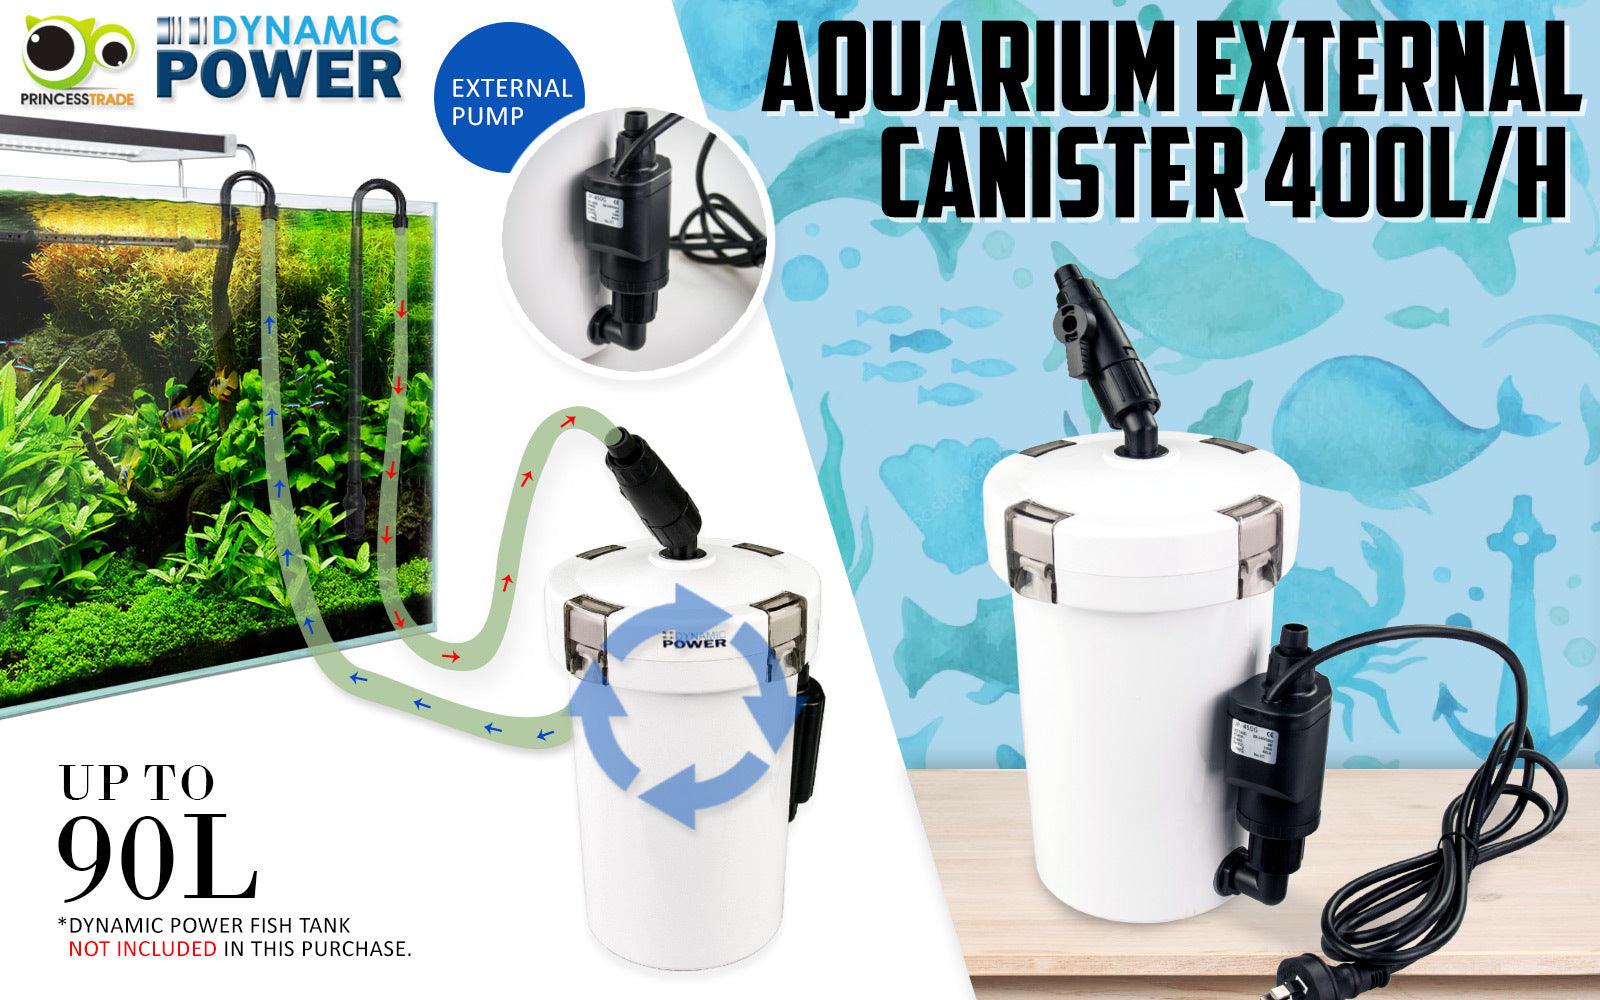 Dynamic Power Aquarium External Canister Filter 400L/H - Pet Parlour Australia